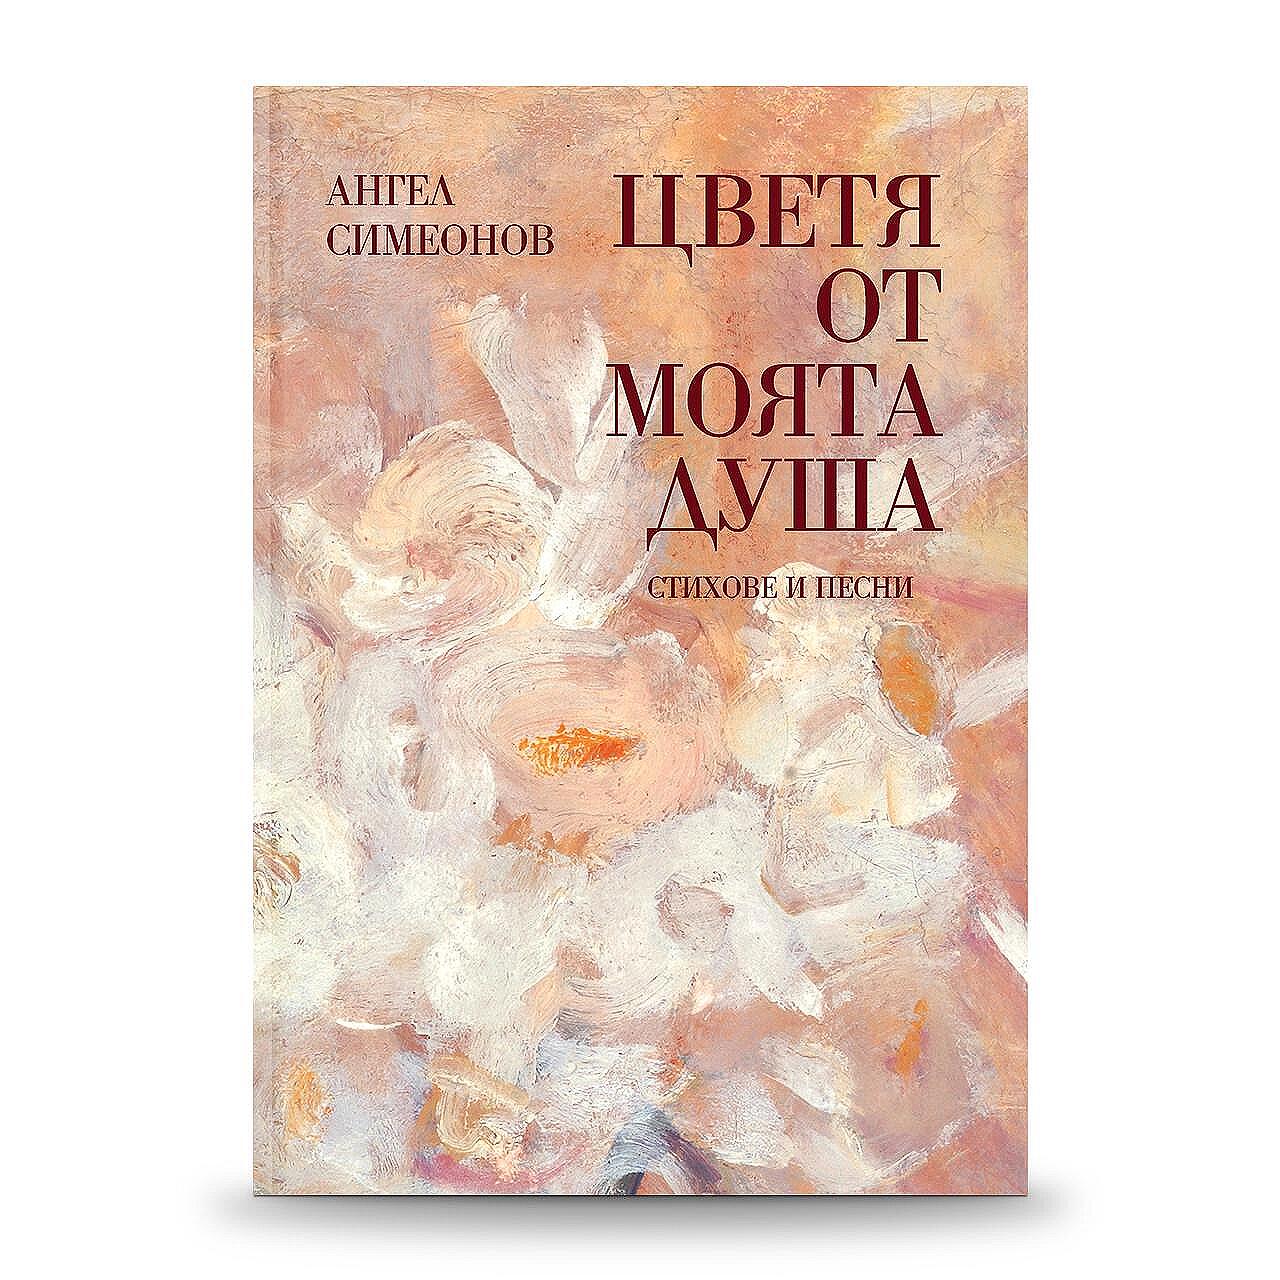 „Цветя от моята душа“ – сборник със стихове и песни на Ангел Симеонов